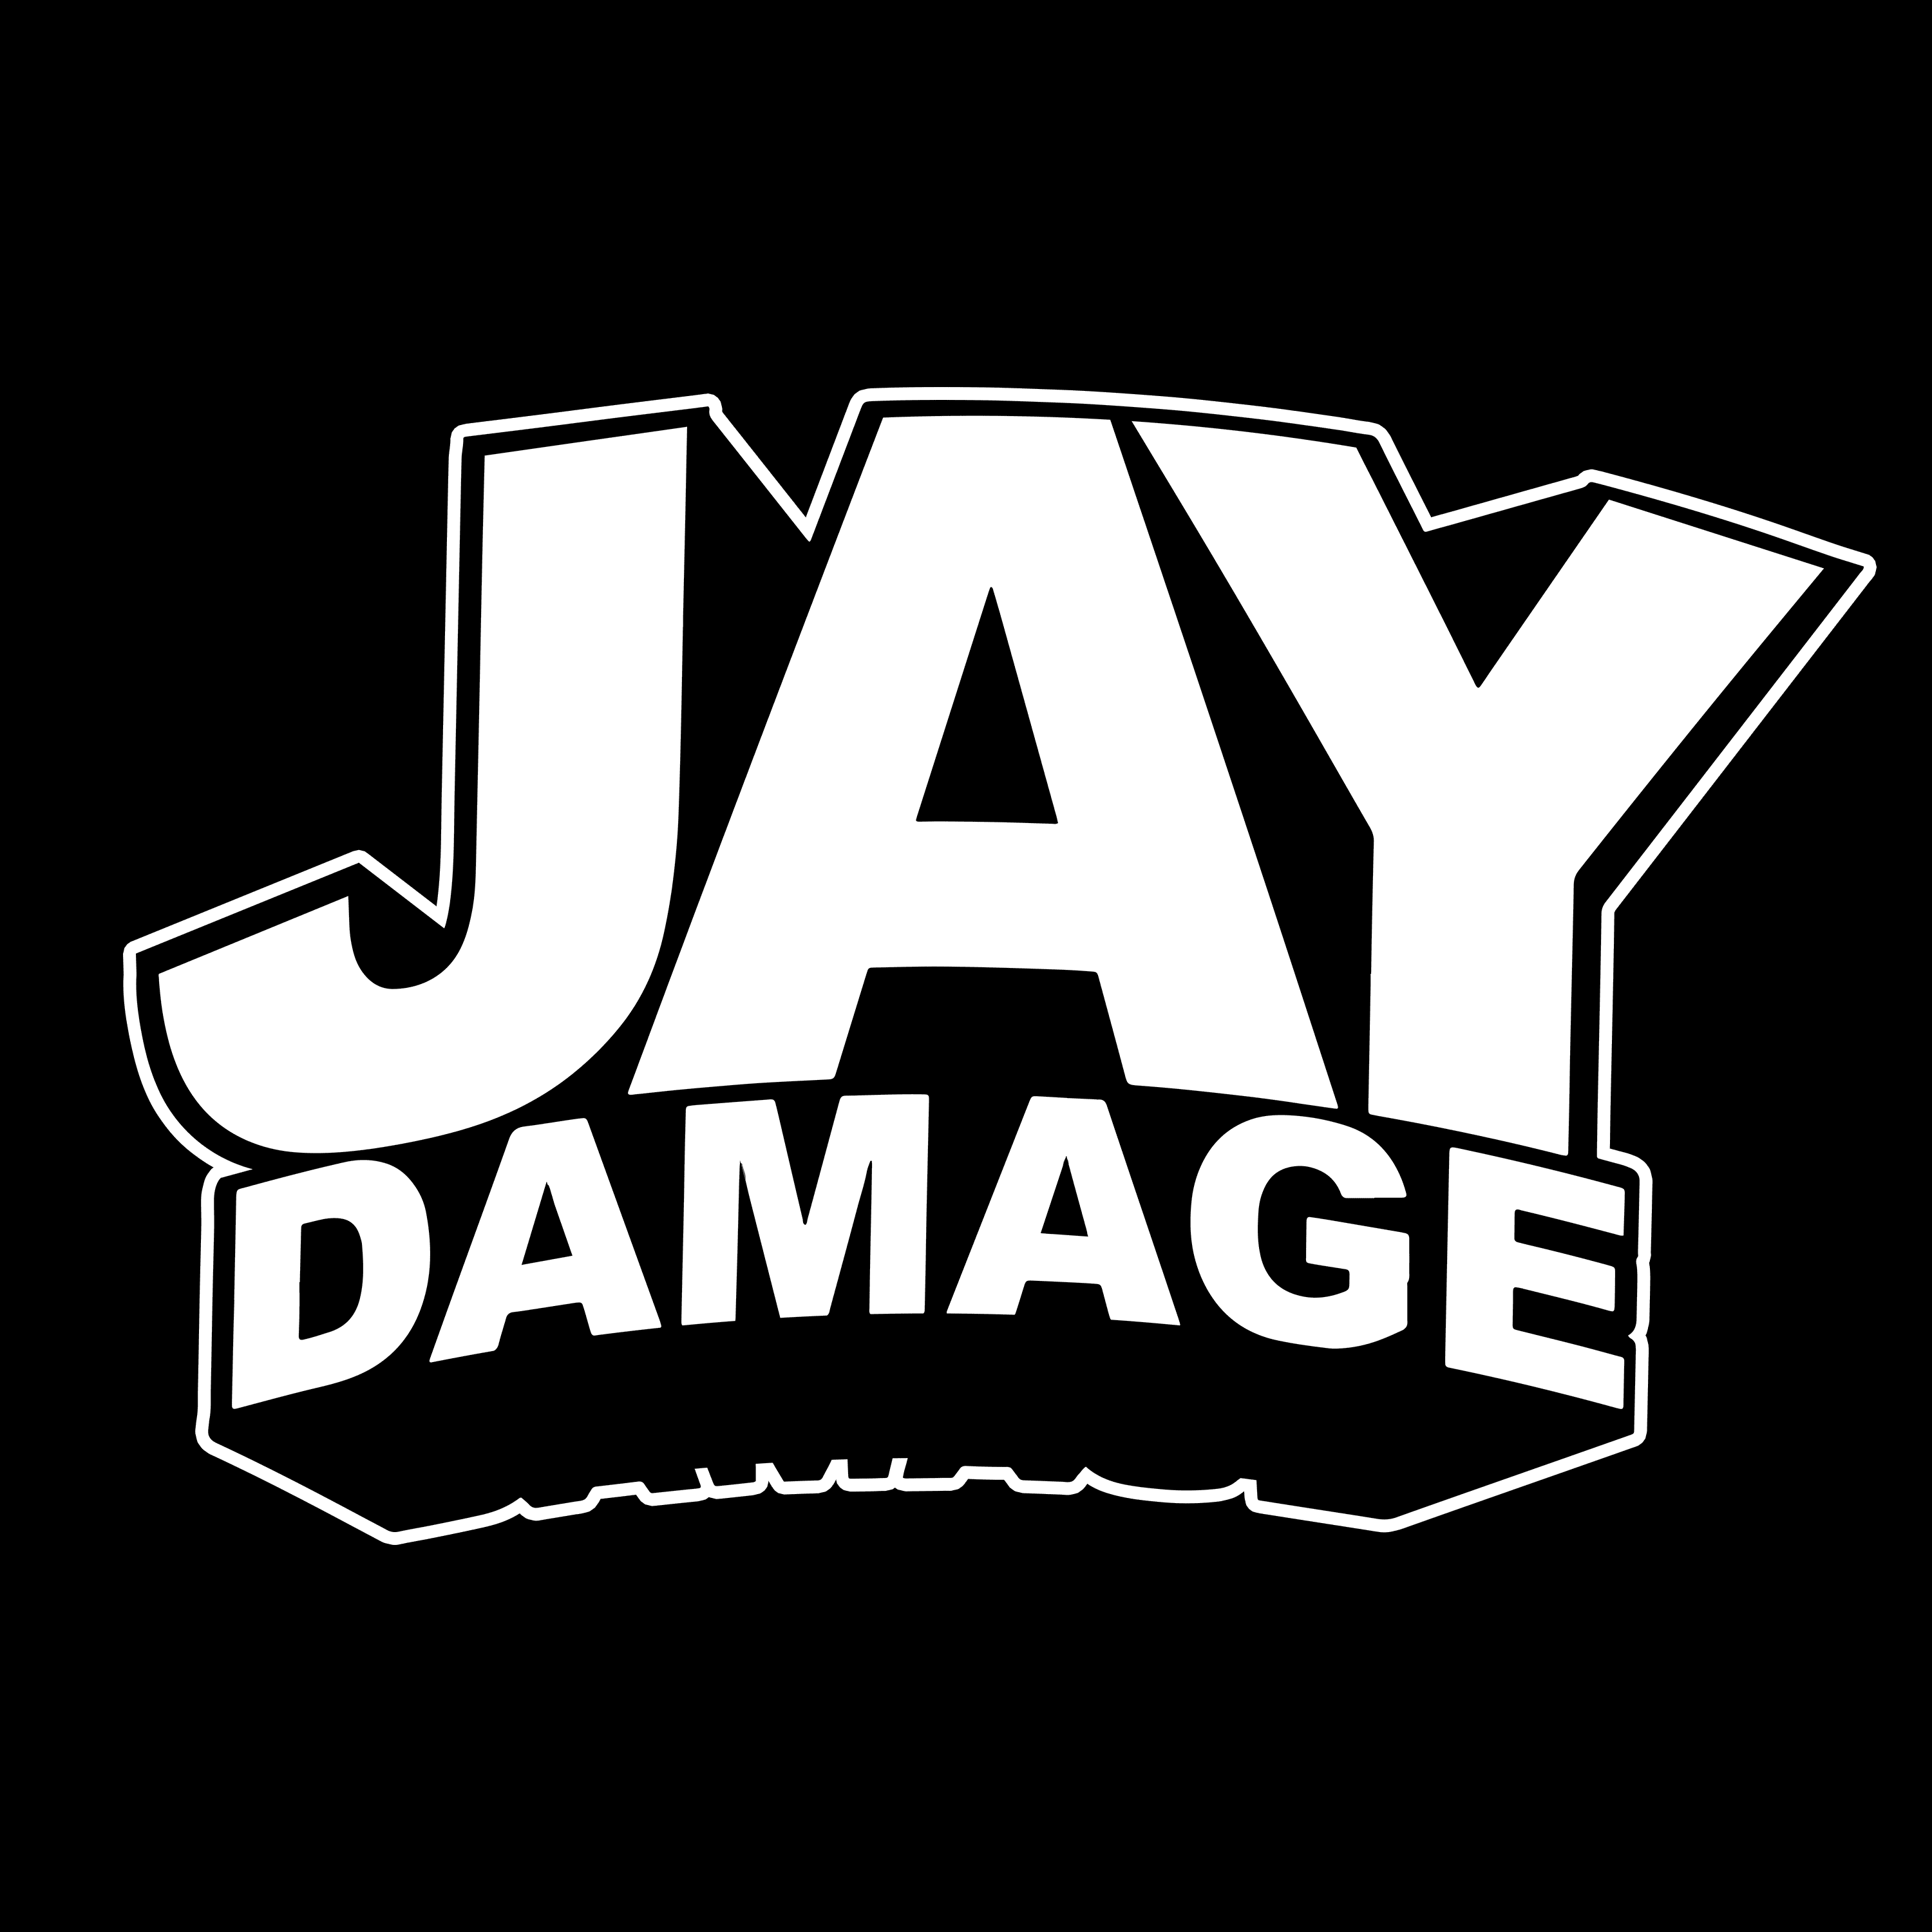 JayDamage